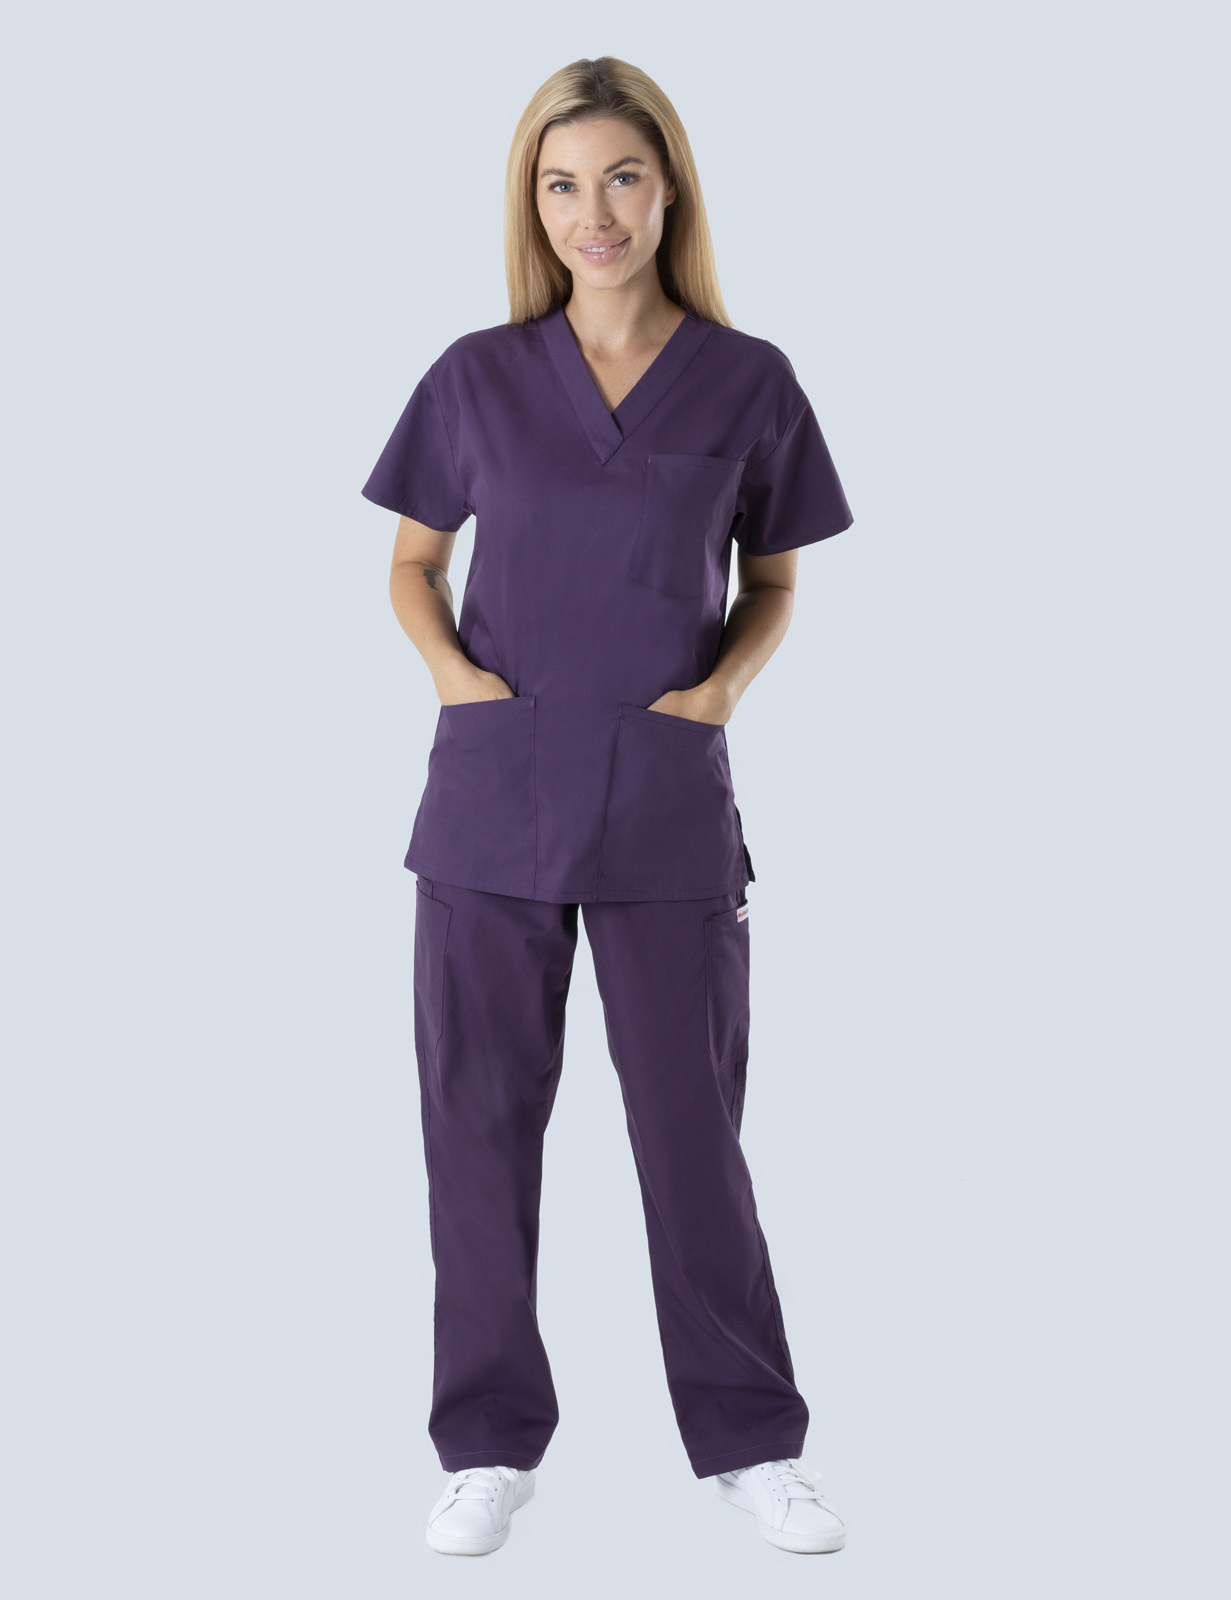 Sandringham Hospital Endorsed Enrolled Nurse Uniform Bundle - (4 Pocket Top with Cargo Pants In Aubergine incl Logo)